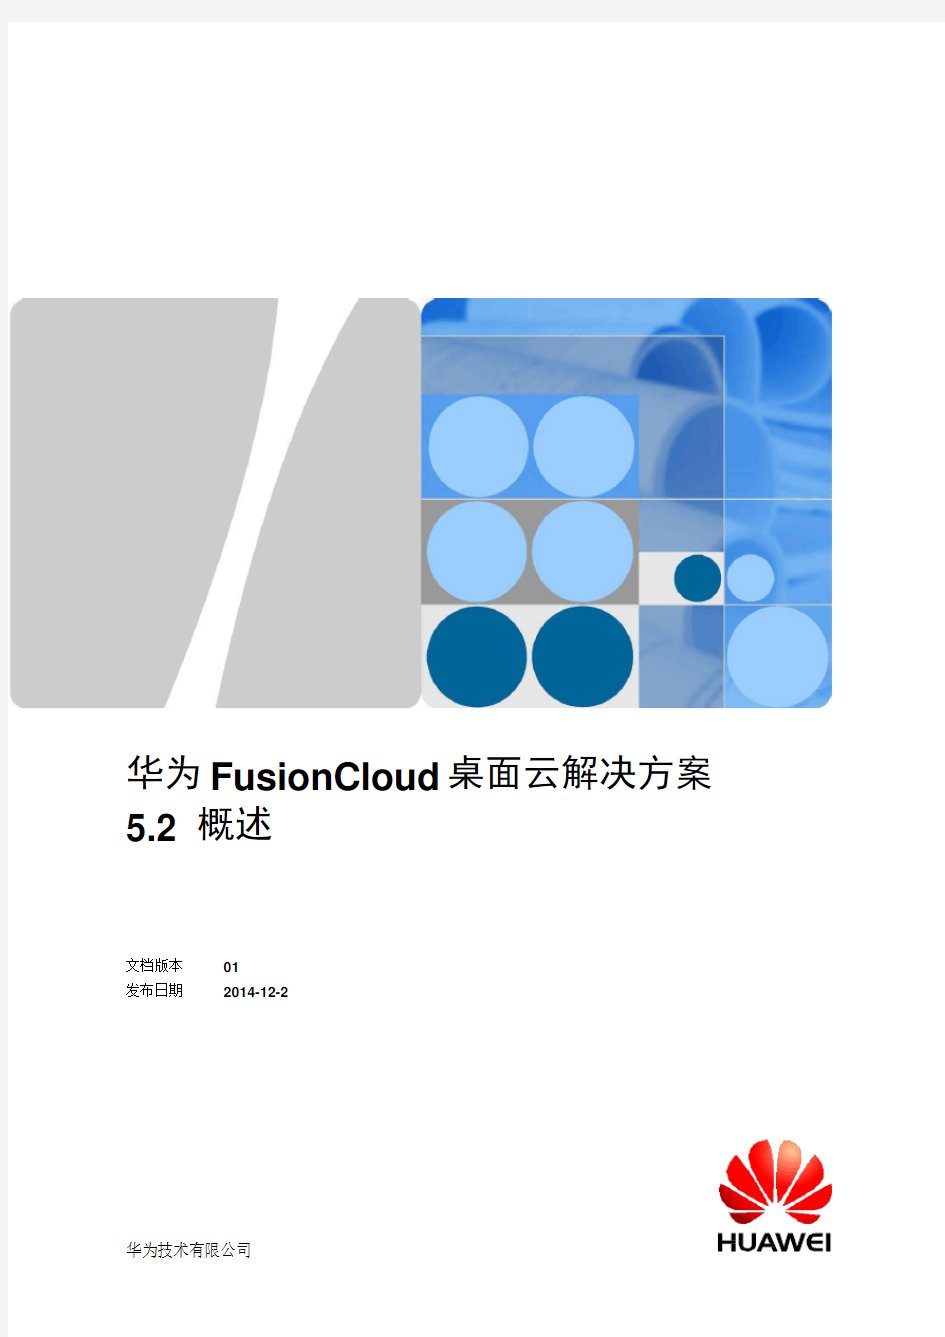 华为FusionCloud桌面云解决方案解析